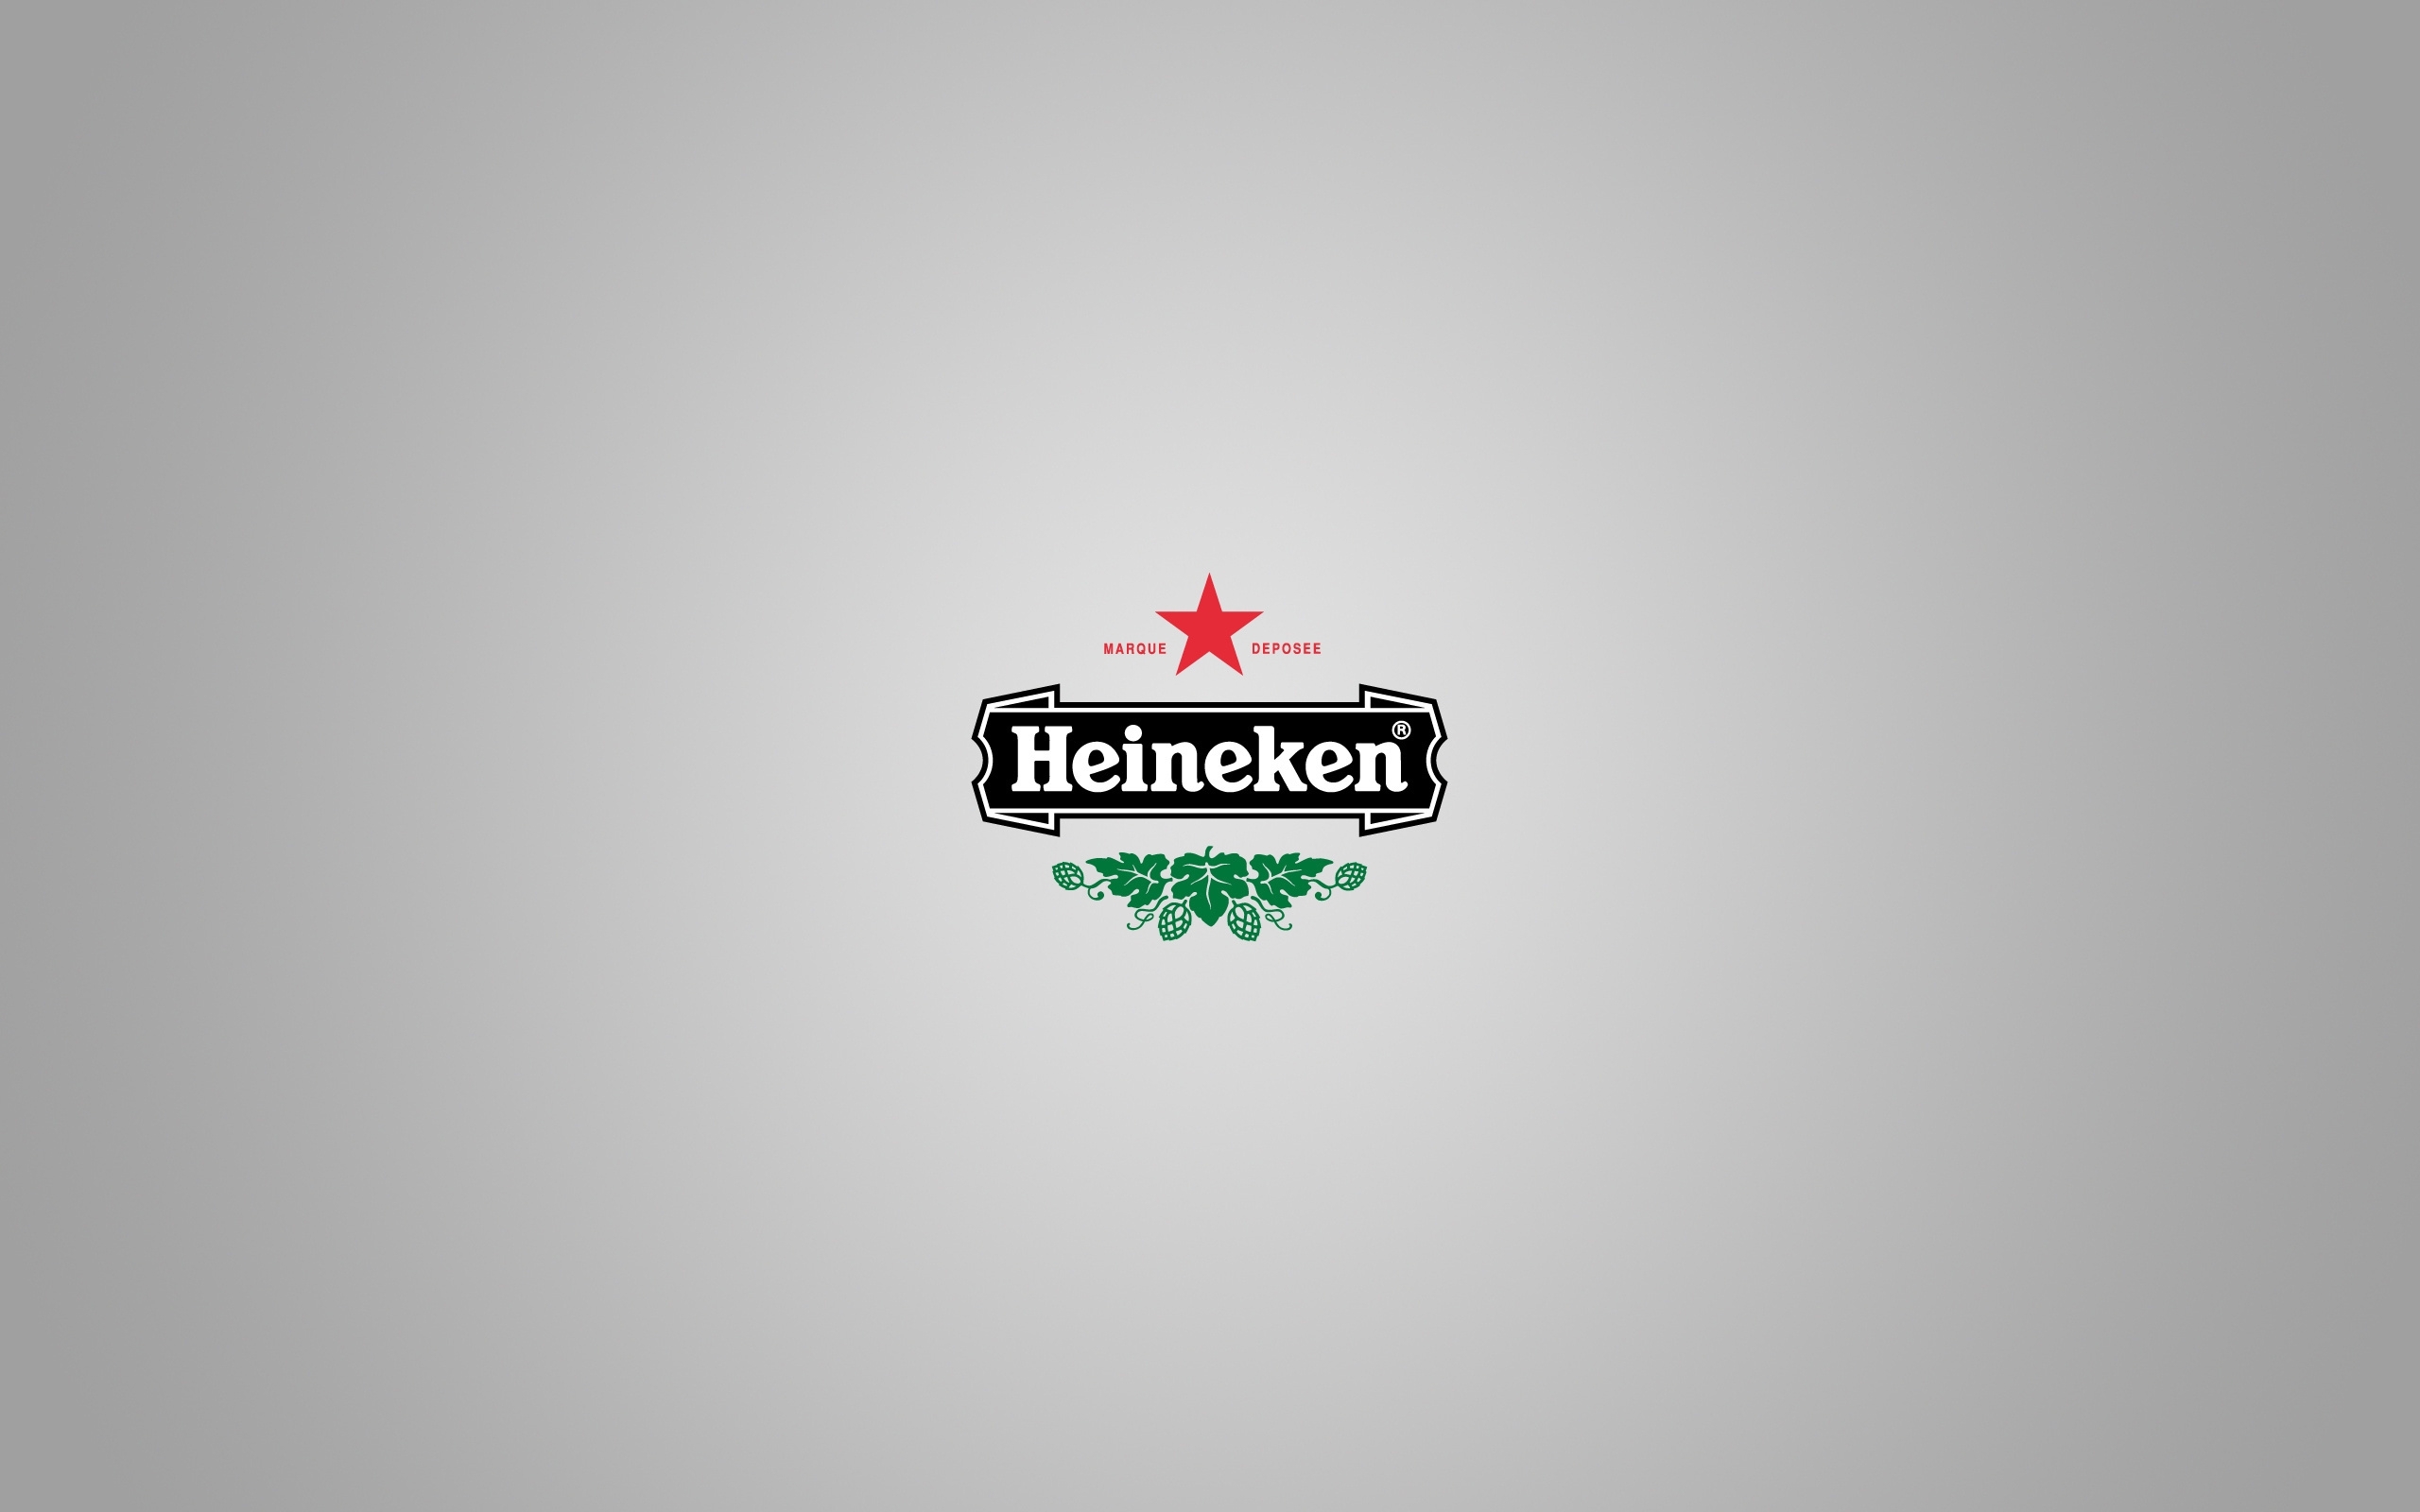 Digital Art Minimalism Simple Background Logo Heineken Beer 2560x1600